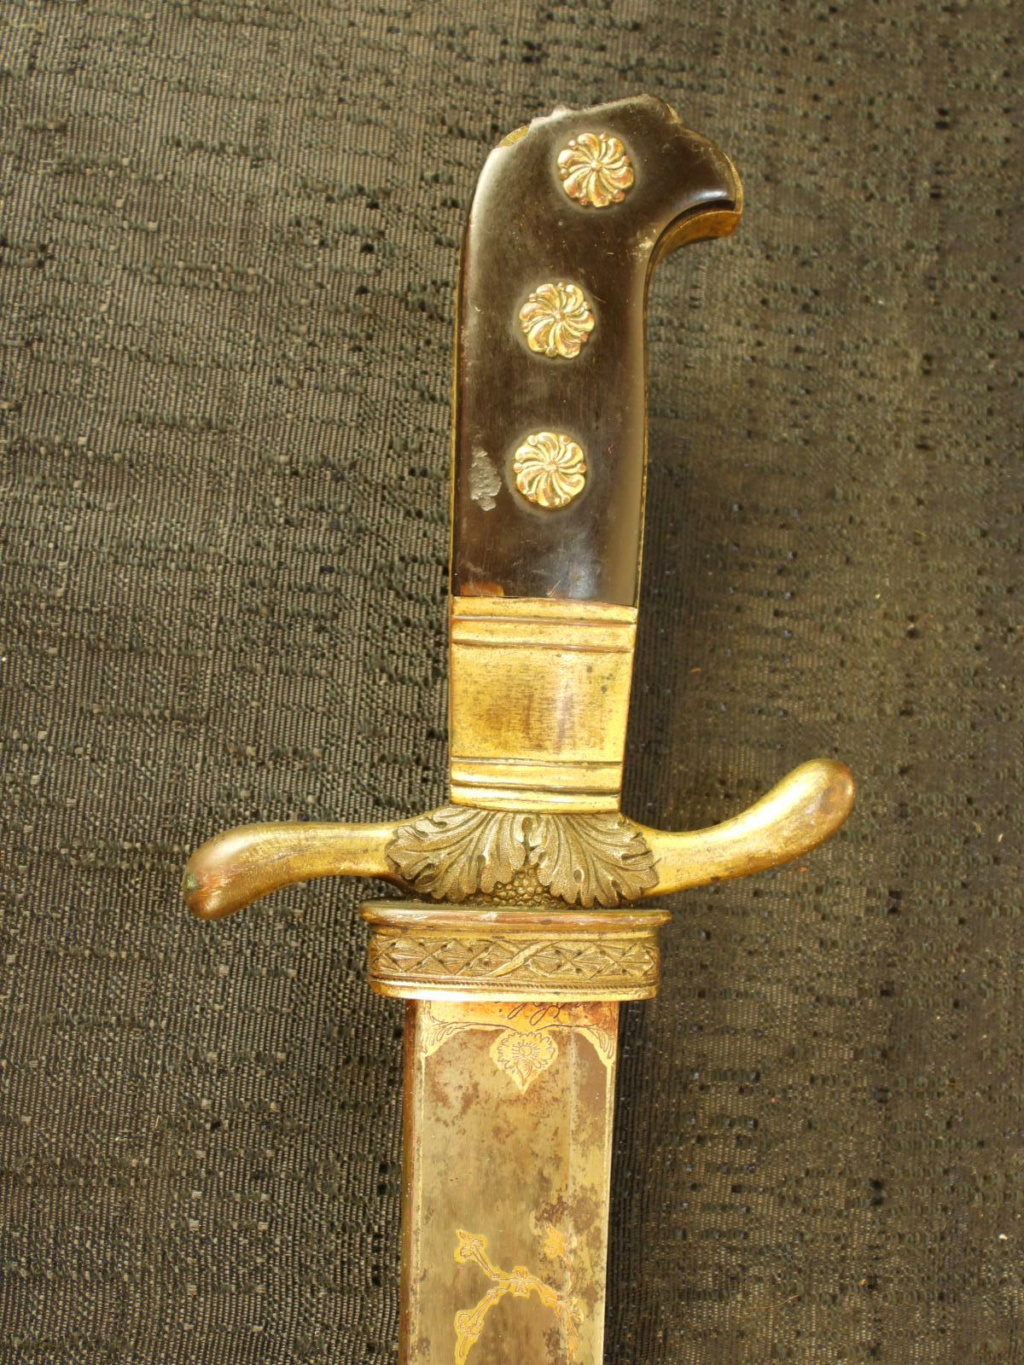 Dague de chasse allemande - "Hirschfanger" début XIXe siècle Dscn8540